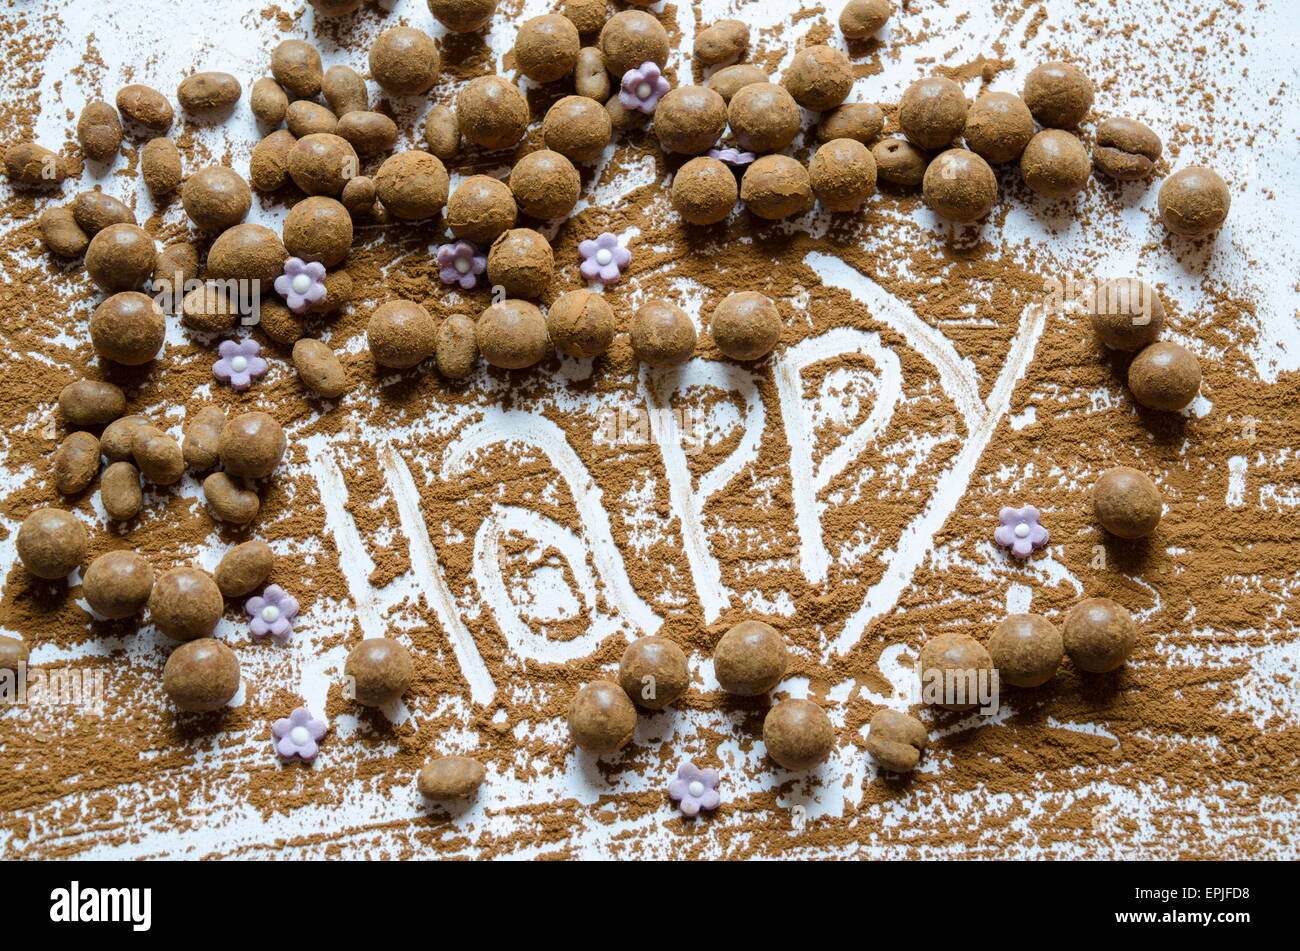 Schokokugeln auf einem Tisch mit dem Wort Happy geschrieben in der Schokolade Stockfoto